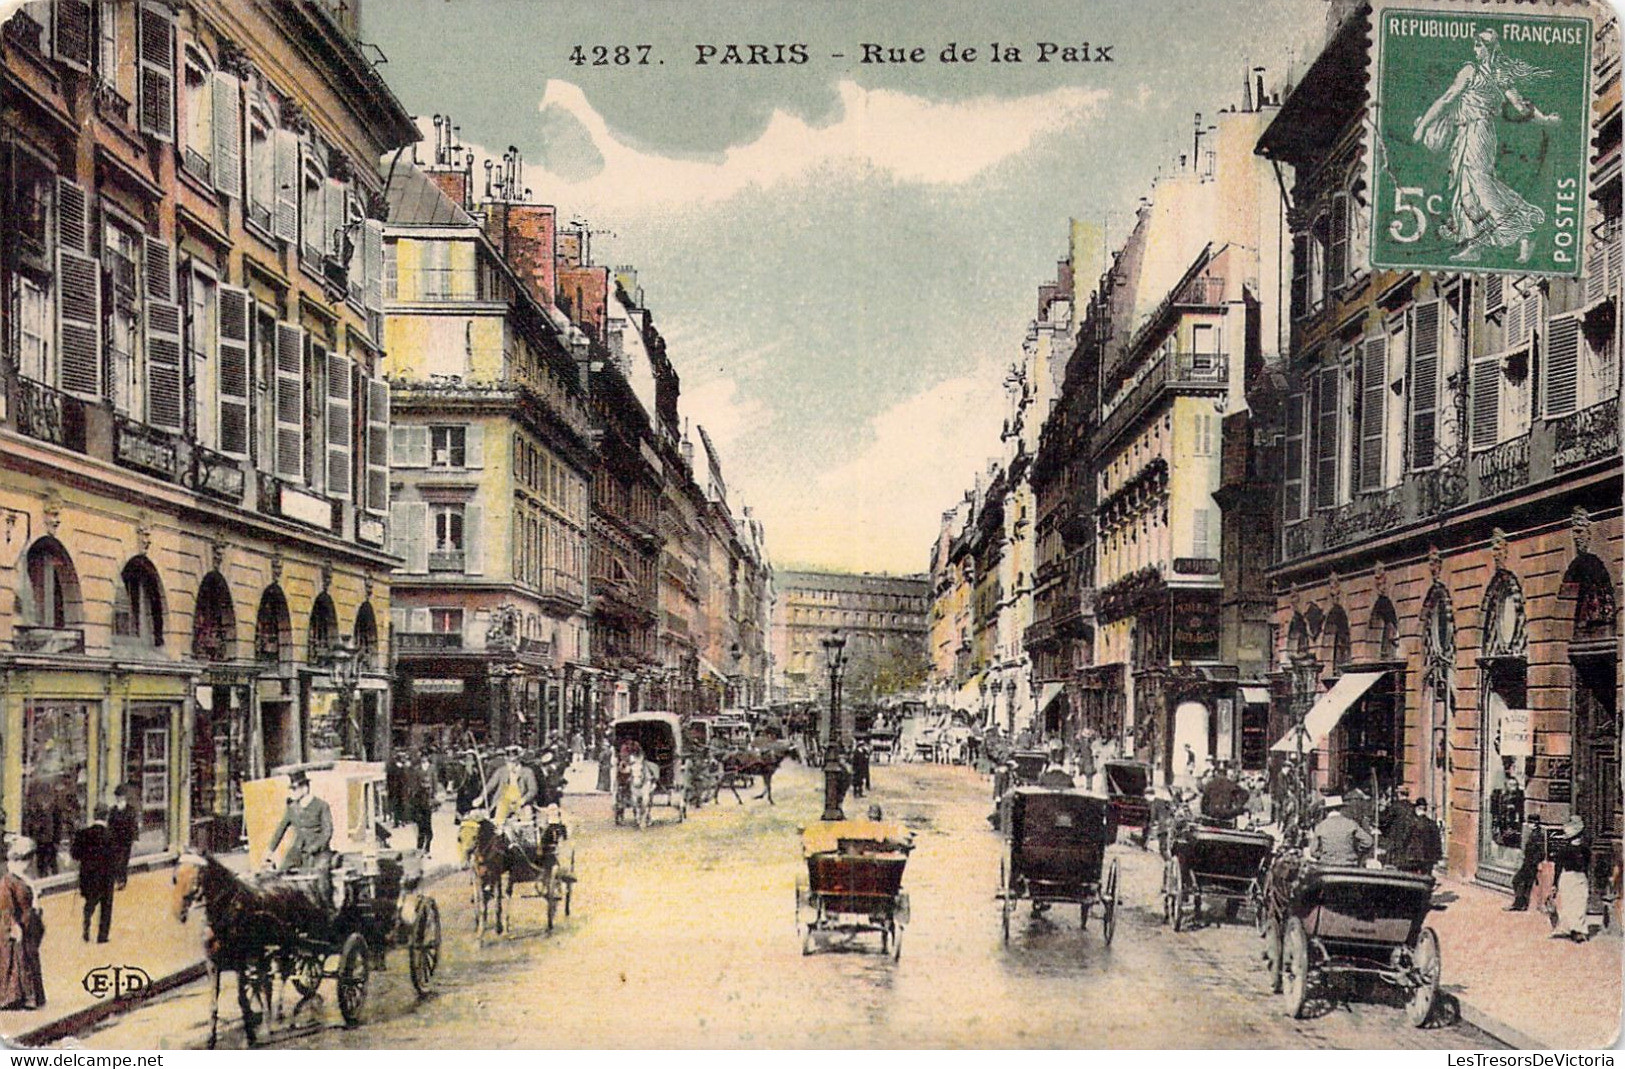 CPA Paris - Lot de 6 cartes des Rues de Paris